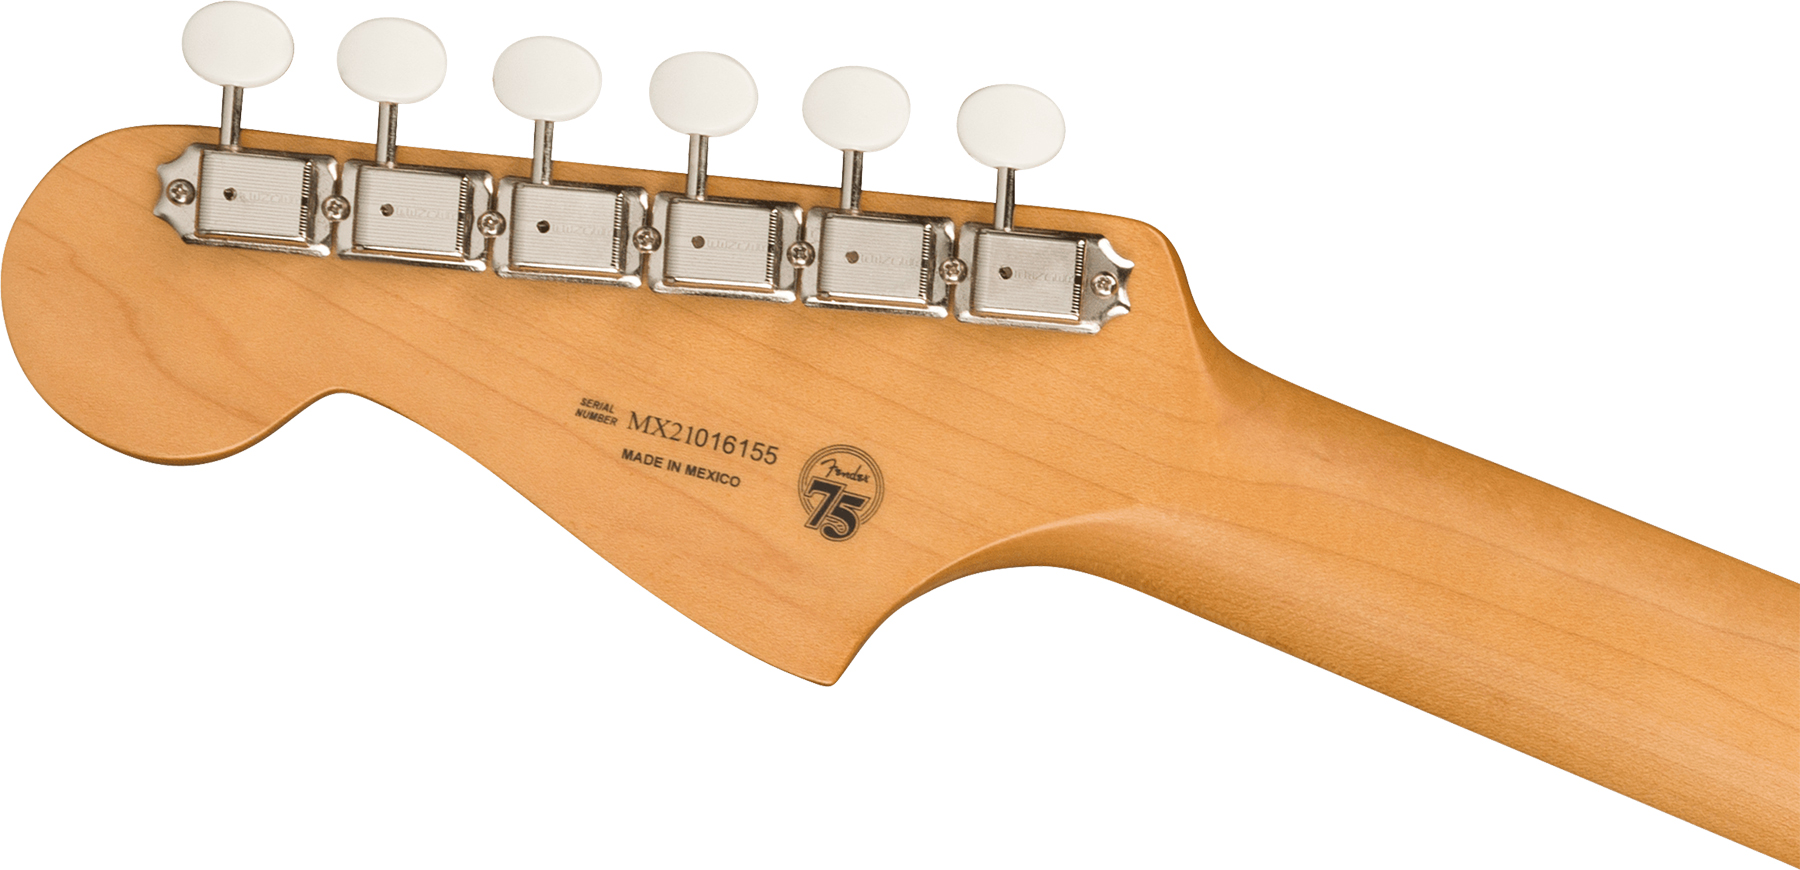 Fender Jazzmaster Gold Foil Ltd Mex 3mh Trem Bigsby Eb - Shoreline Gold - Guitare Électrique RÉtro Rock - Variation 3